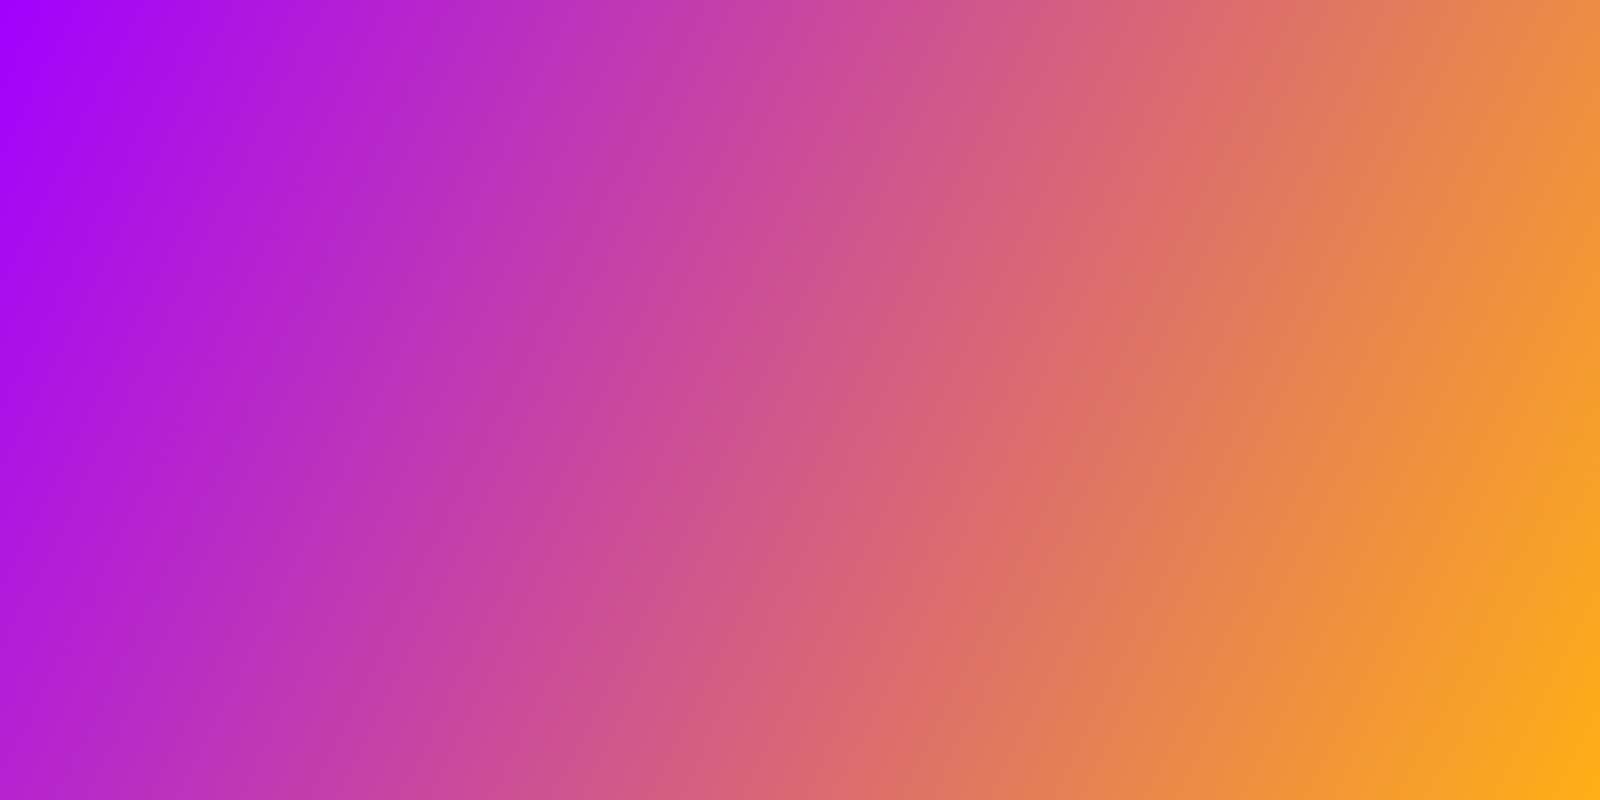 градиент от фиолетового к оранжевому пазл онлайн из фото